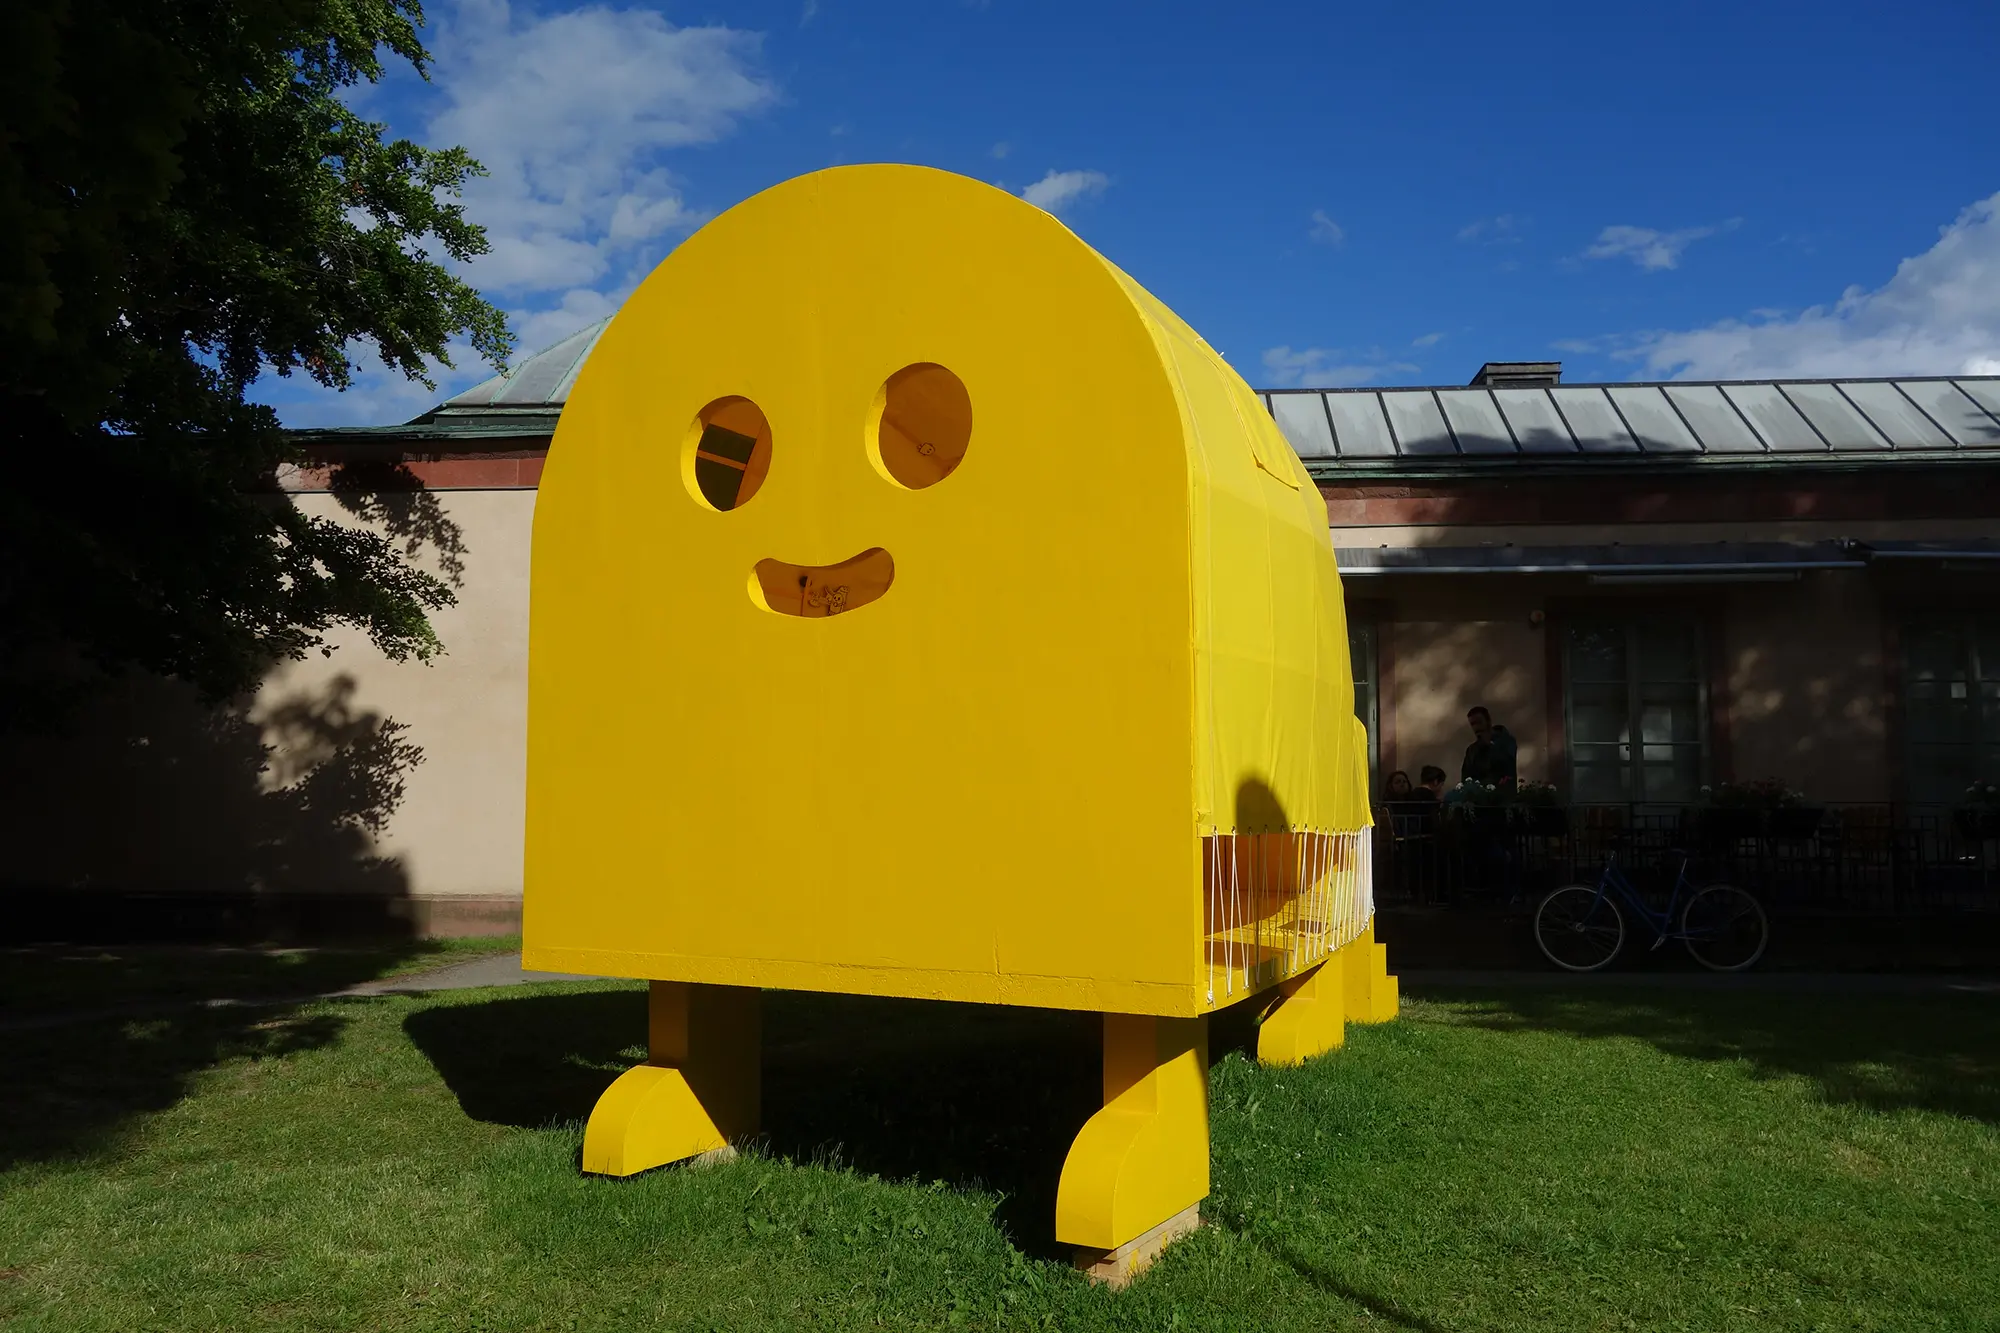 På en gräsmatta framför ett lågt hus står en stor gul skulptur som består av ett avlångt tält med runt tak med två träväggar på kortsidorna. Skulpturen är upphöjd på fyra gula ben. På den ena träväggen är hål utskurna i formen av en glad emoji.